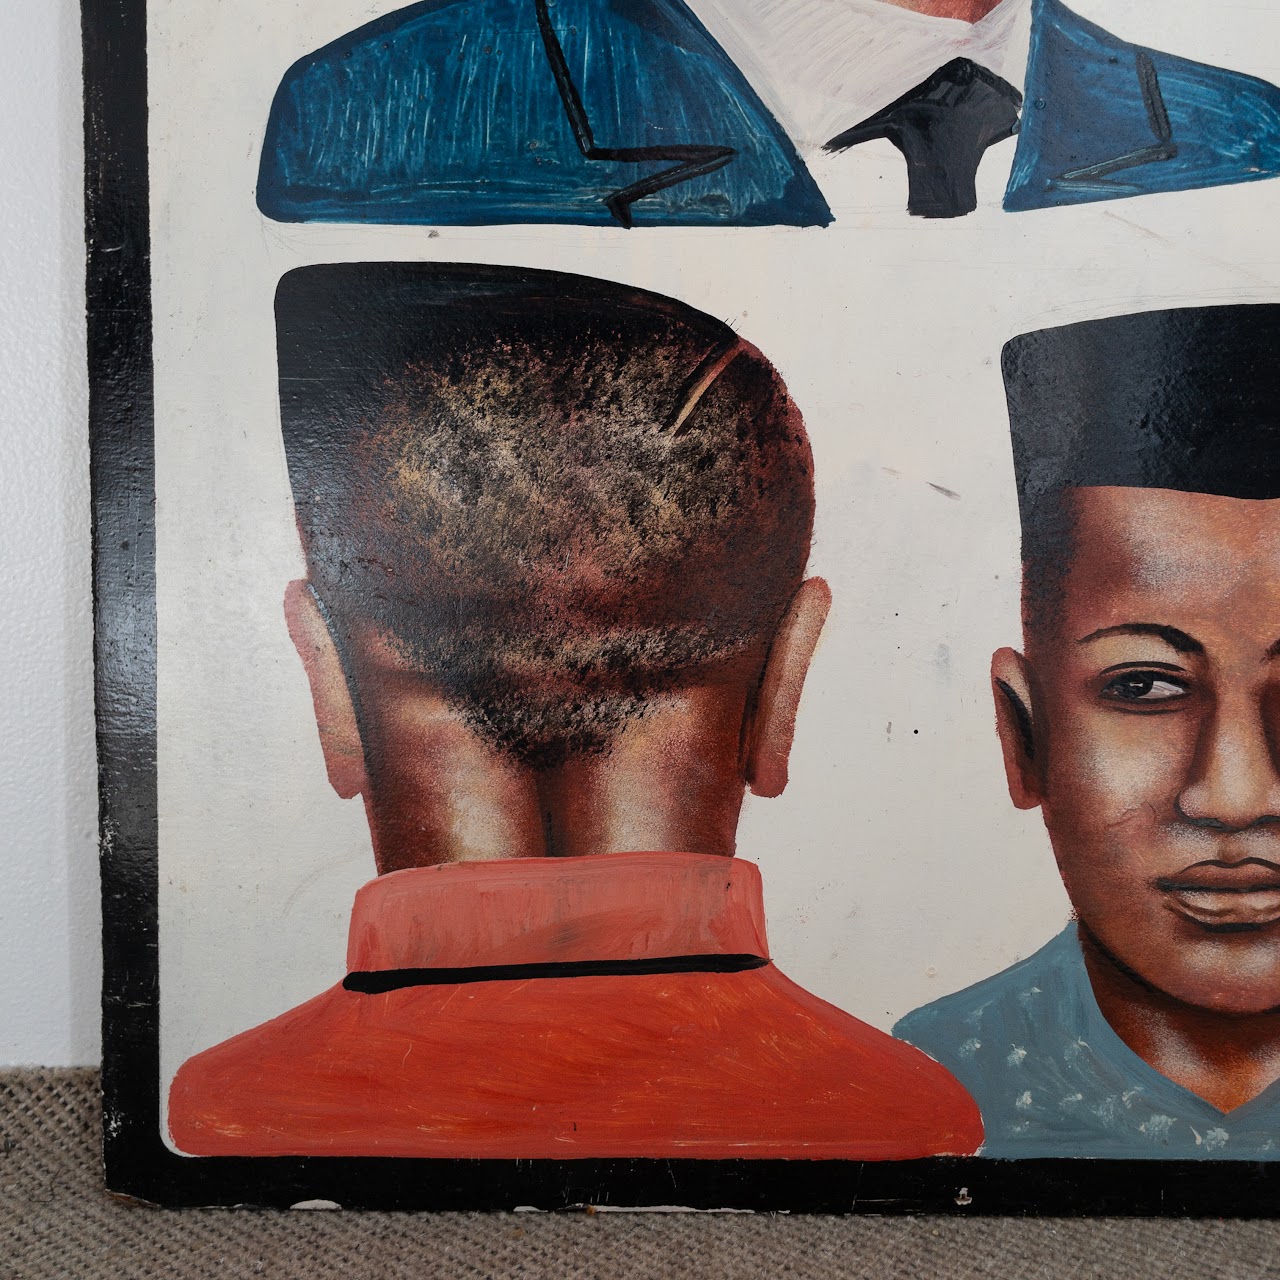 Nigerian Vintage Hand Painted Barber Shop Sign